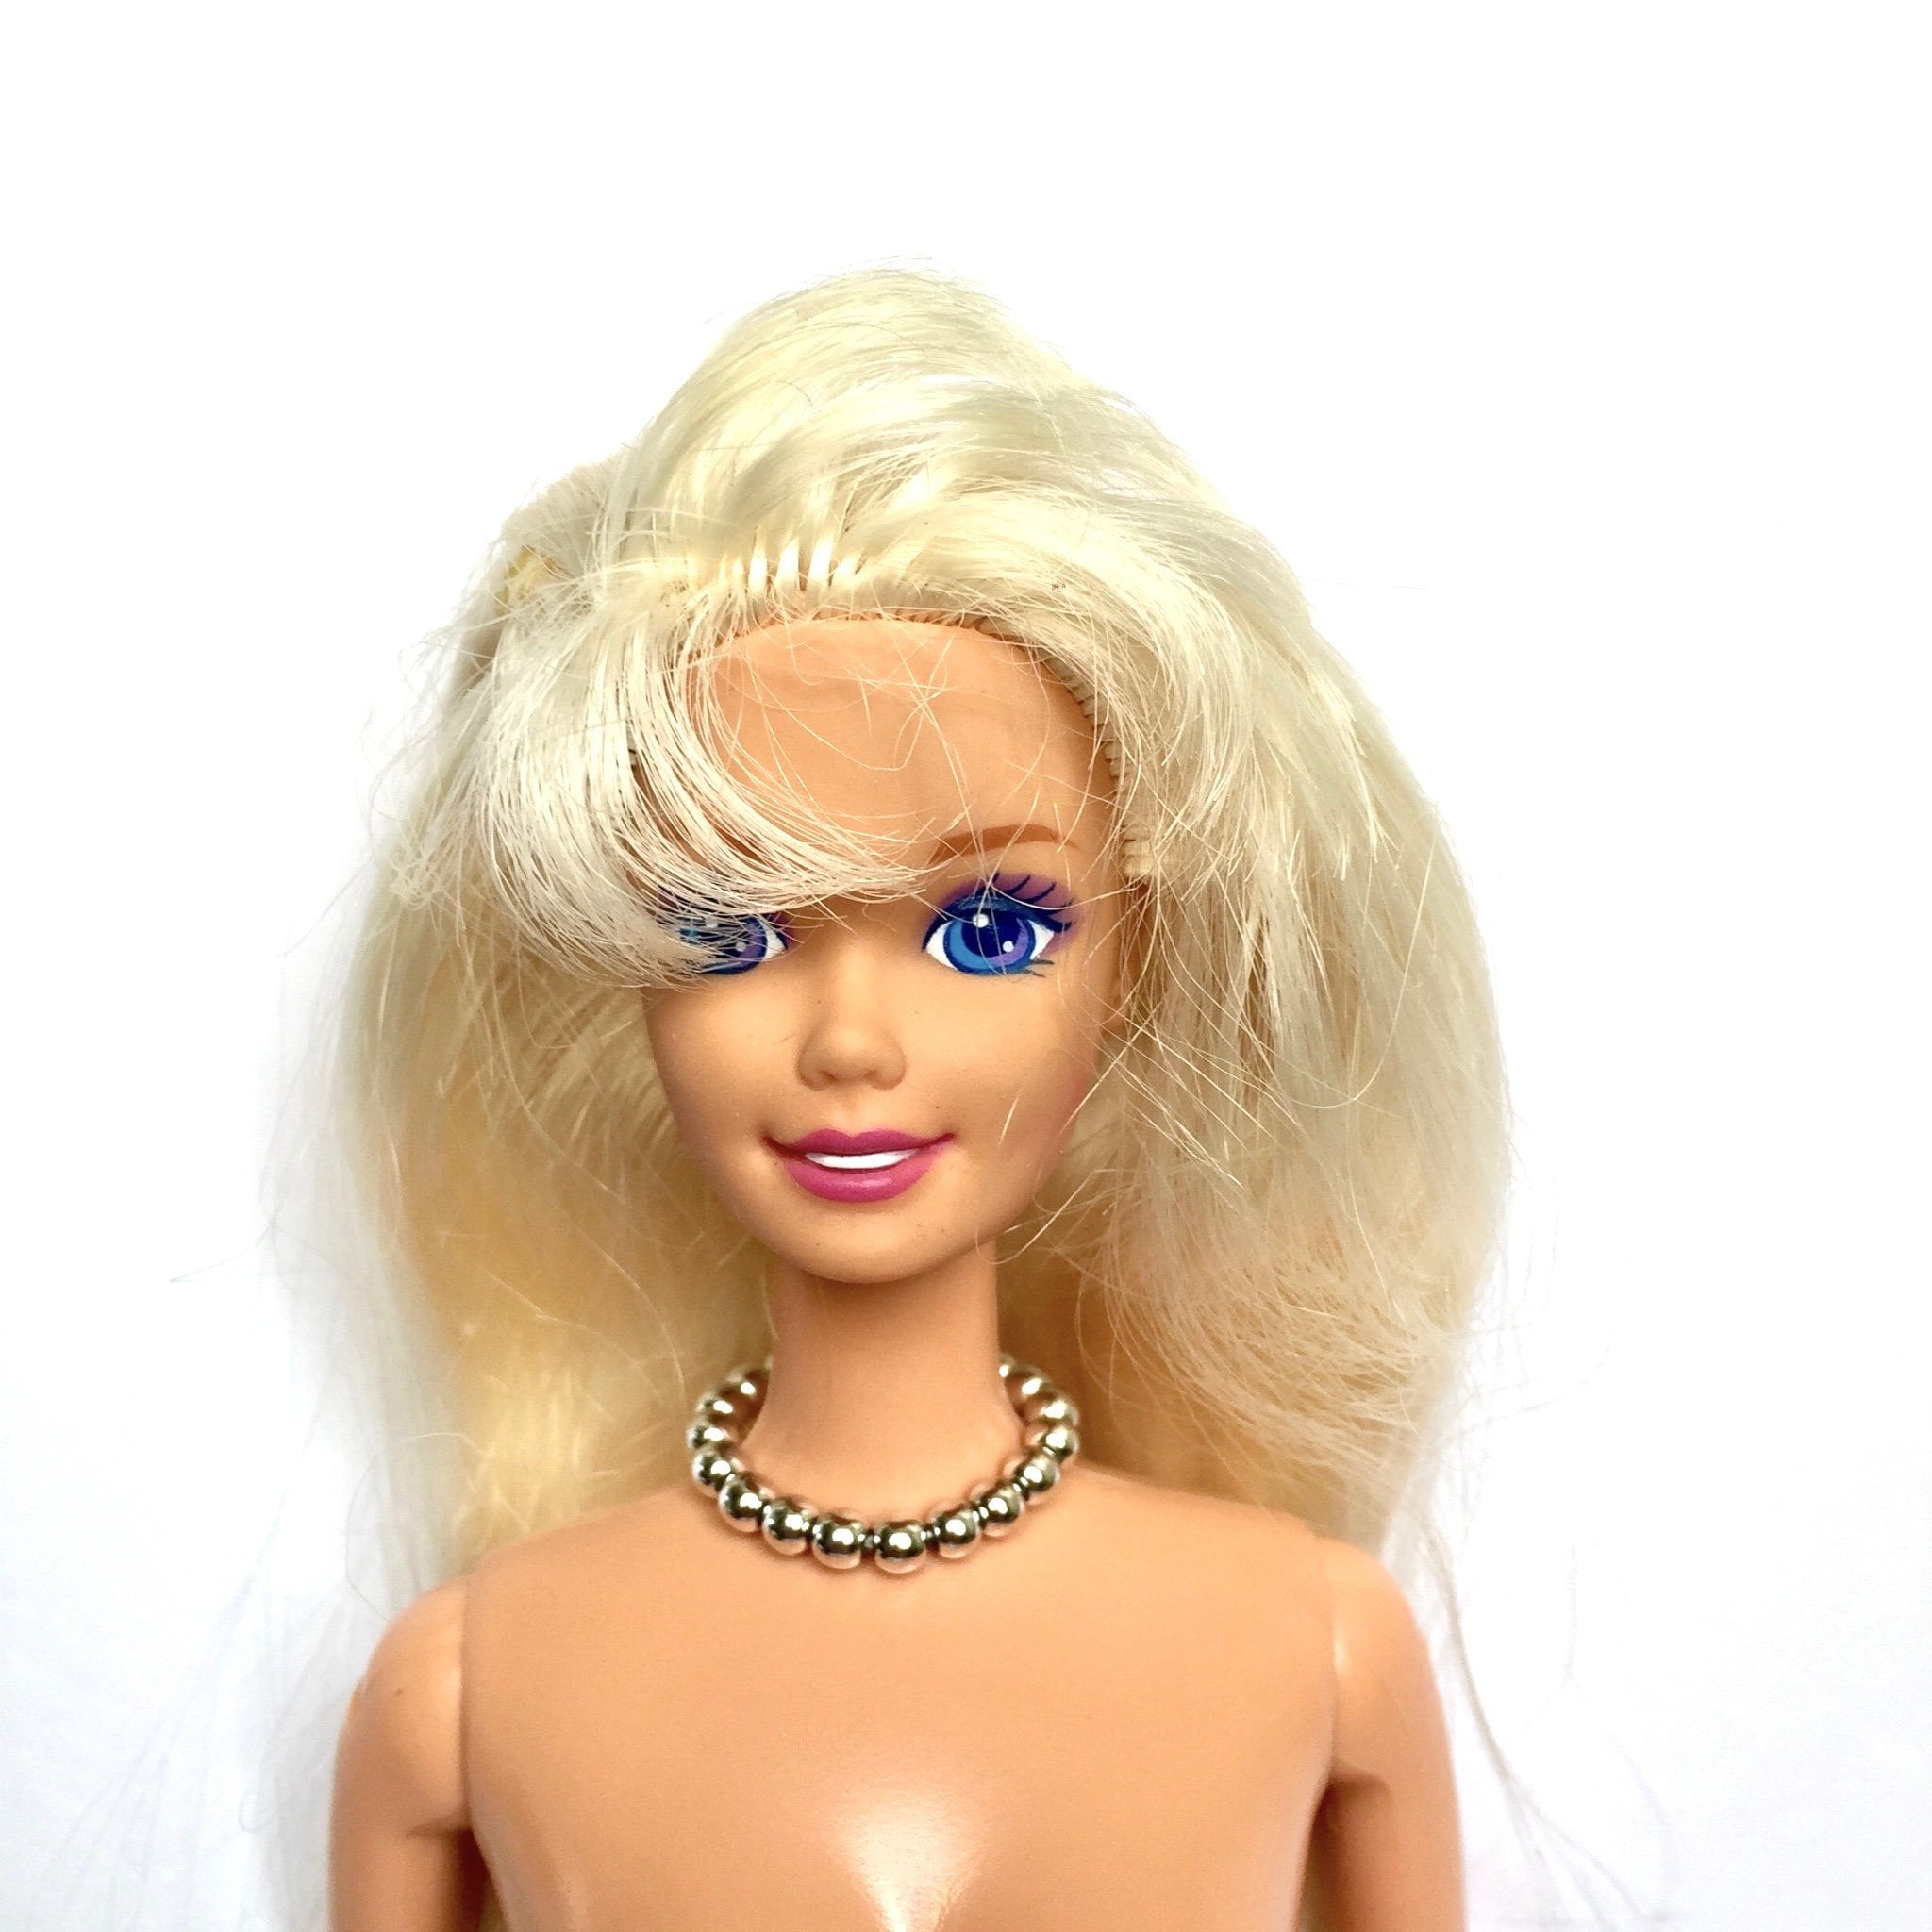 NEW 2021 Barbie Chelsea Friend Boy Doll ~ Blonde Hair Brown Eyes Tan Nude